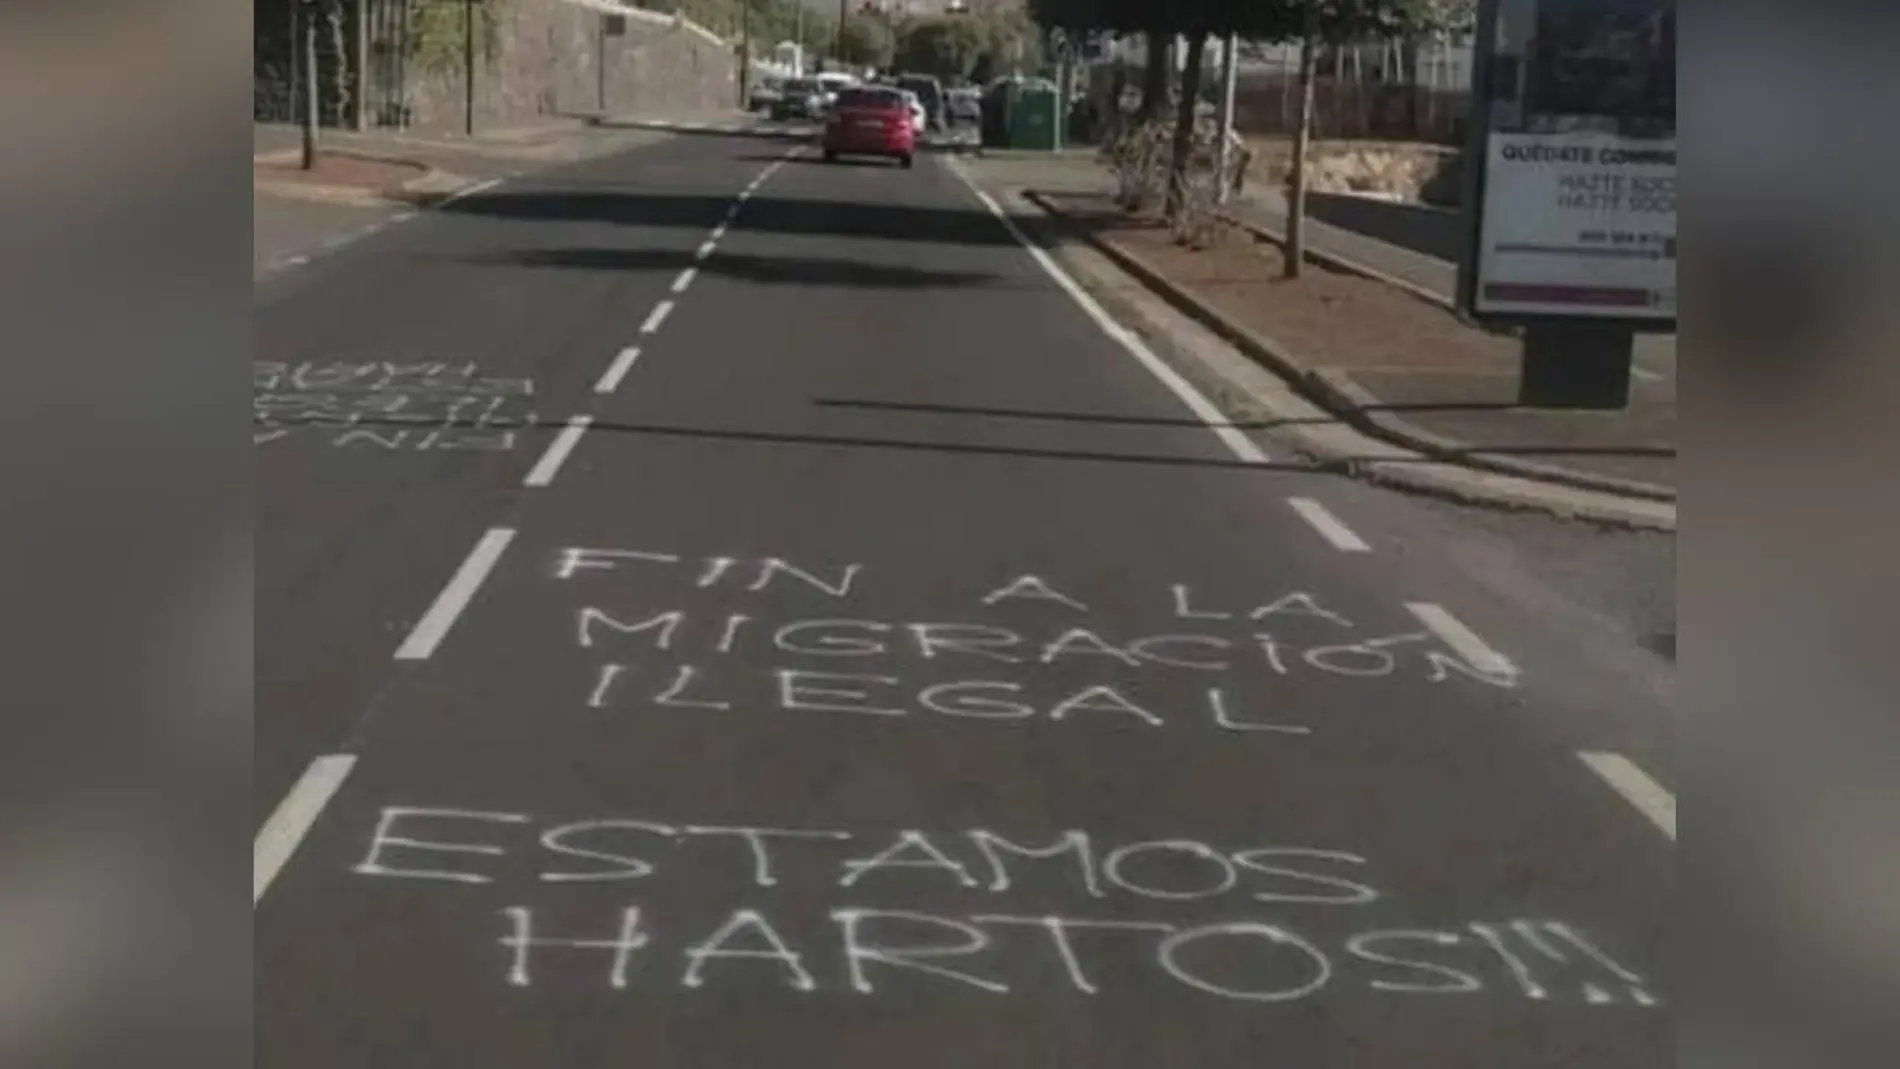 Pintadas xenófobas cerca de un centro de internamiento de extranjeros en Tenerife 